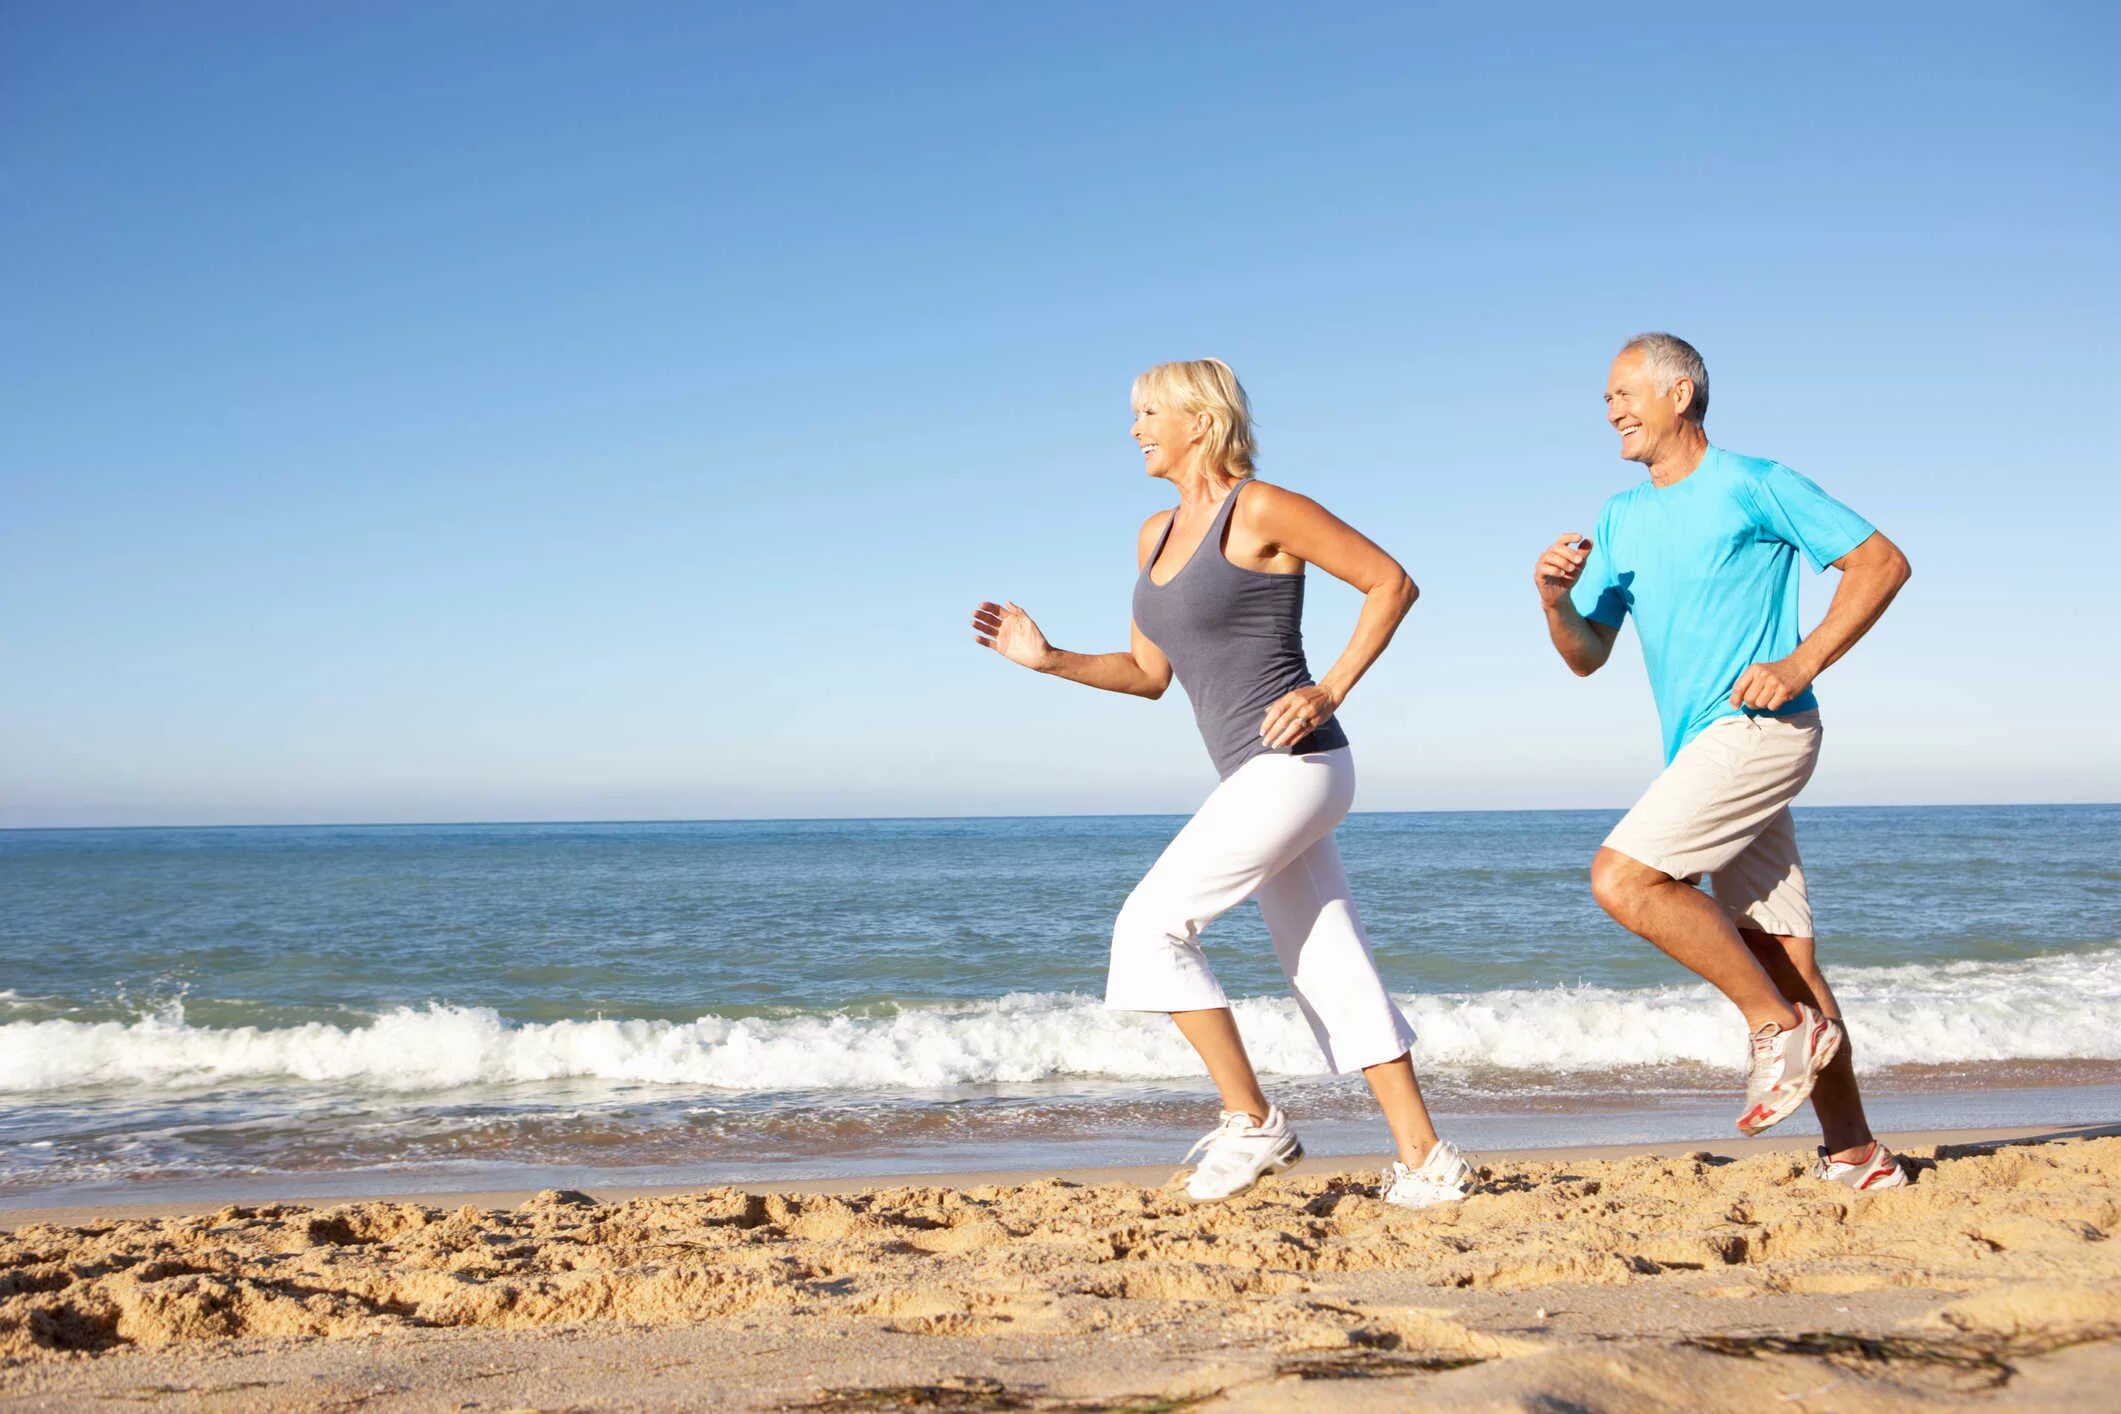 Sport helps people. Активный образ жизни. Здоровый человек. Физическая активность и здоровье. Здоровье и долголетие человека.